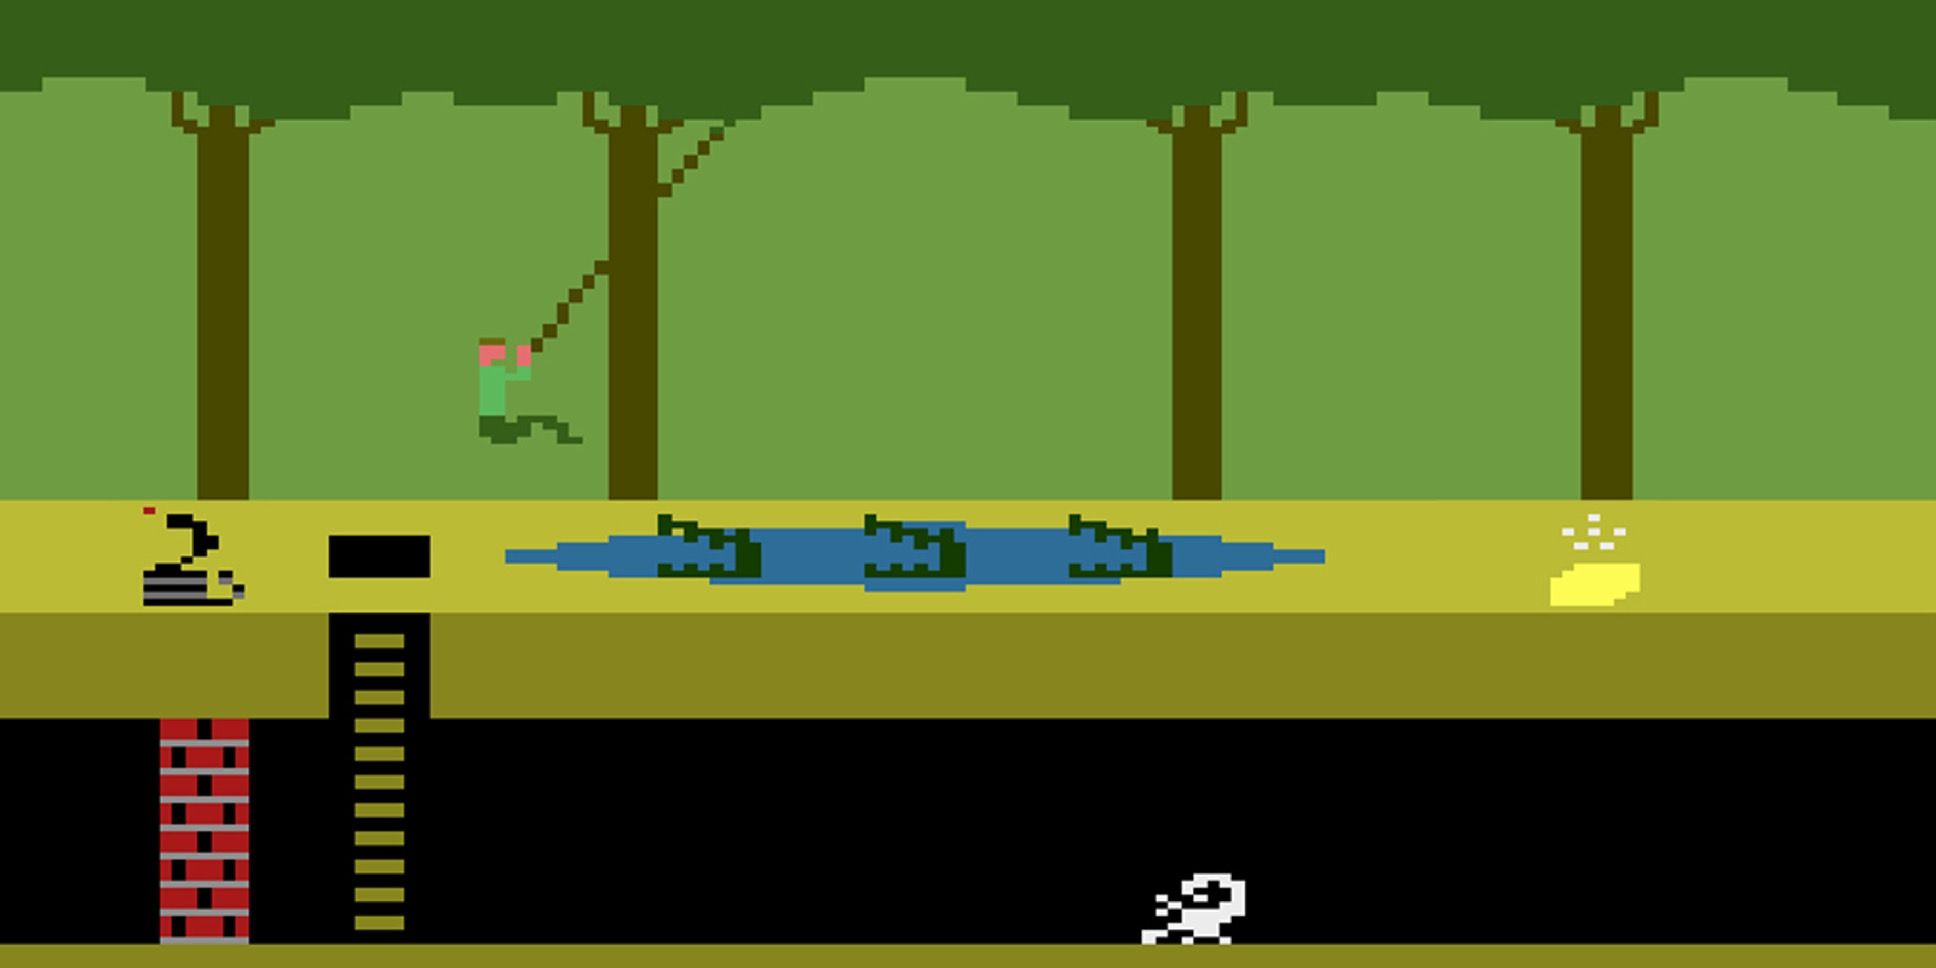 Pitfall video game on Atari image.